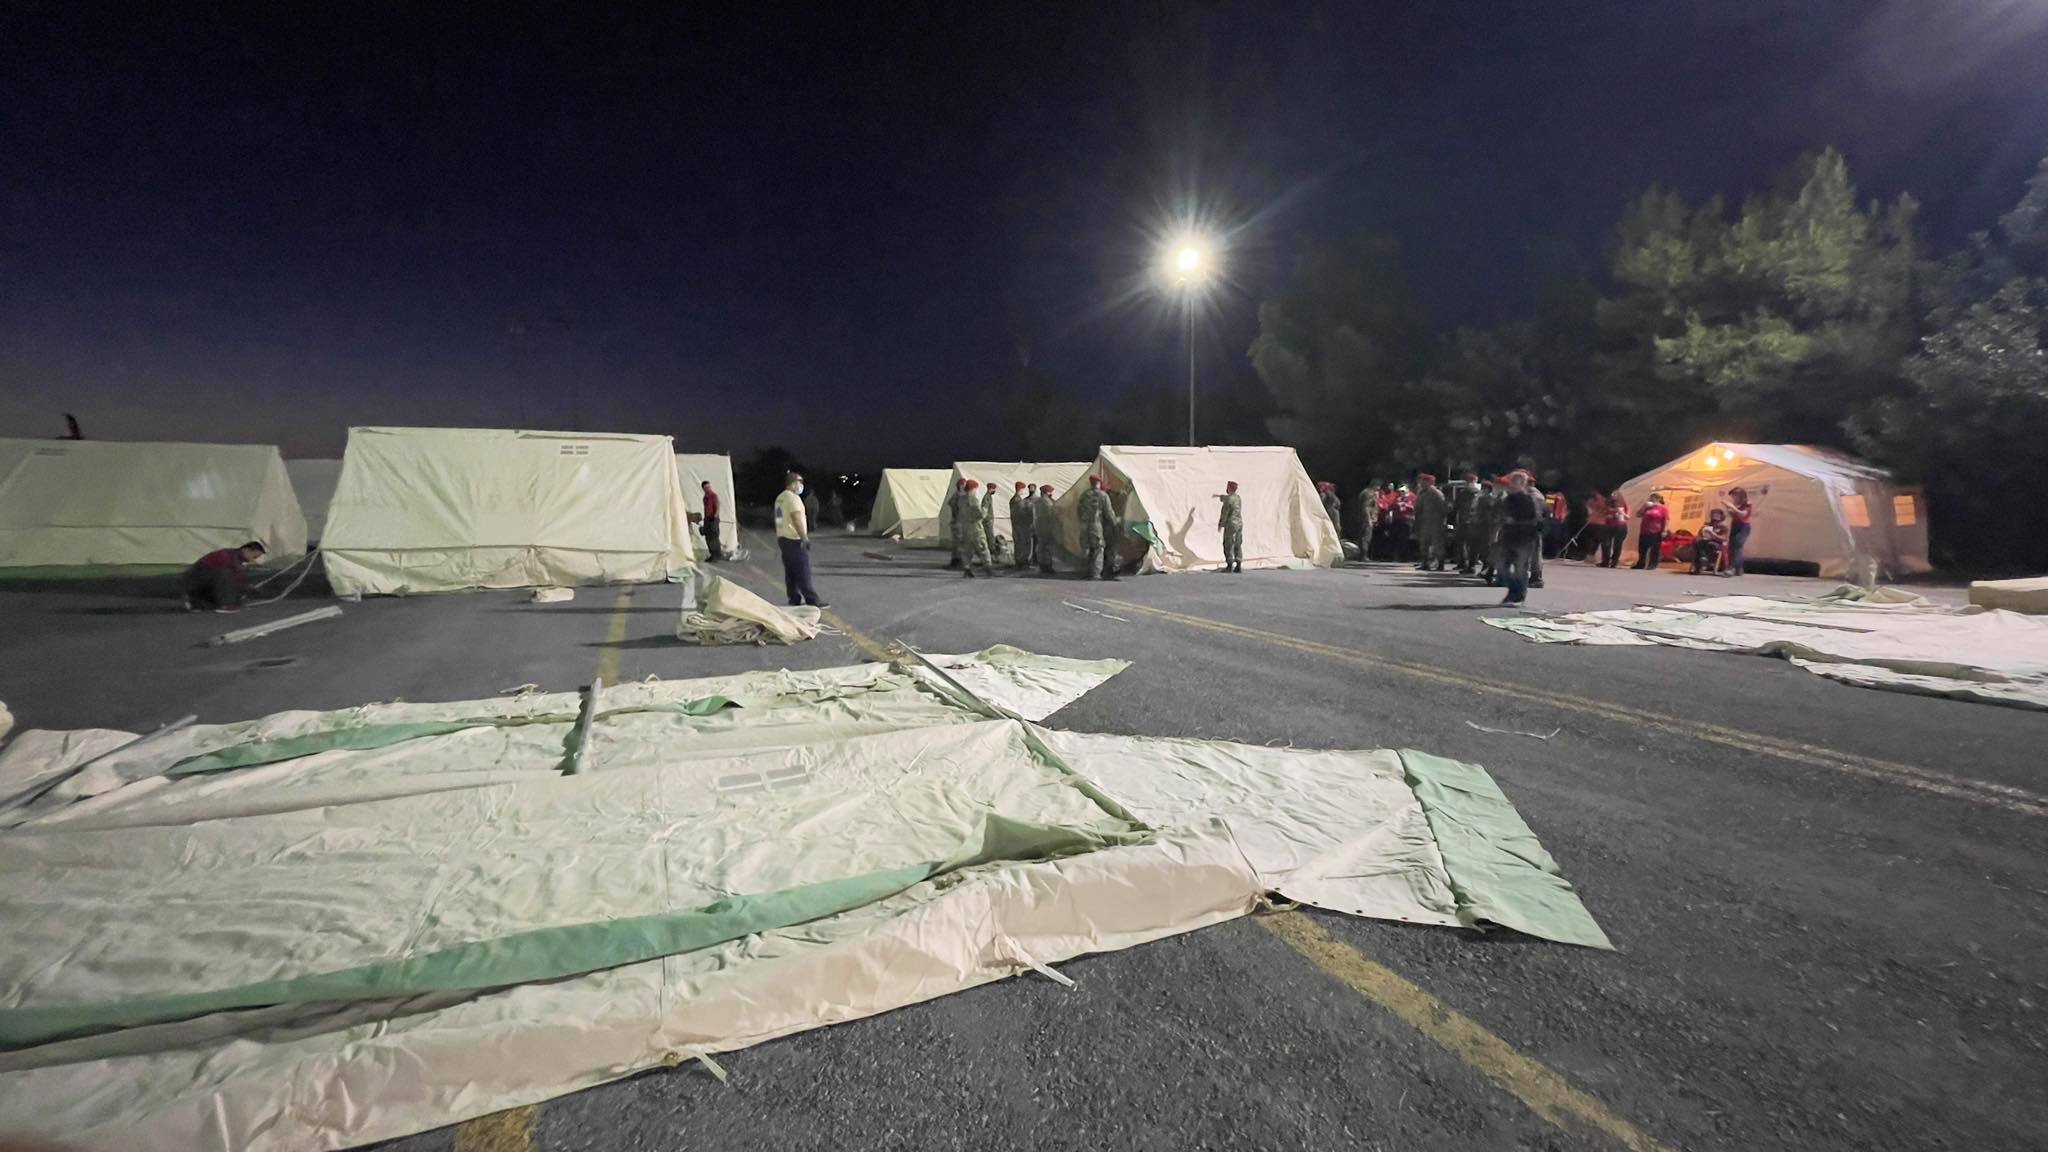  Κέντρο Υγείας σε σκηνή του στρατού στο Αρκαλοχώρι - ΚΡΗΤΗ -  PressGreece